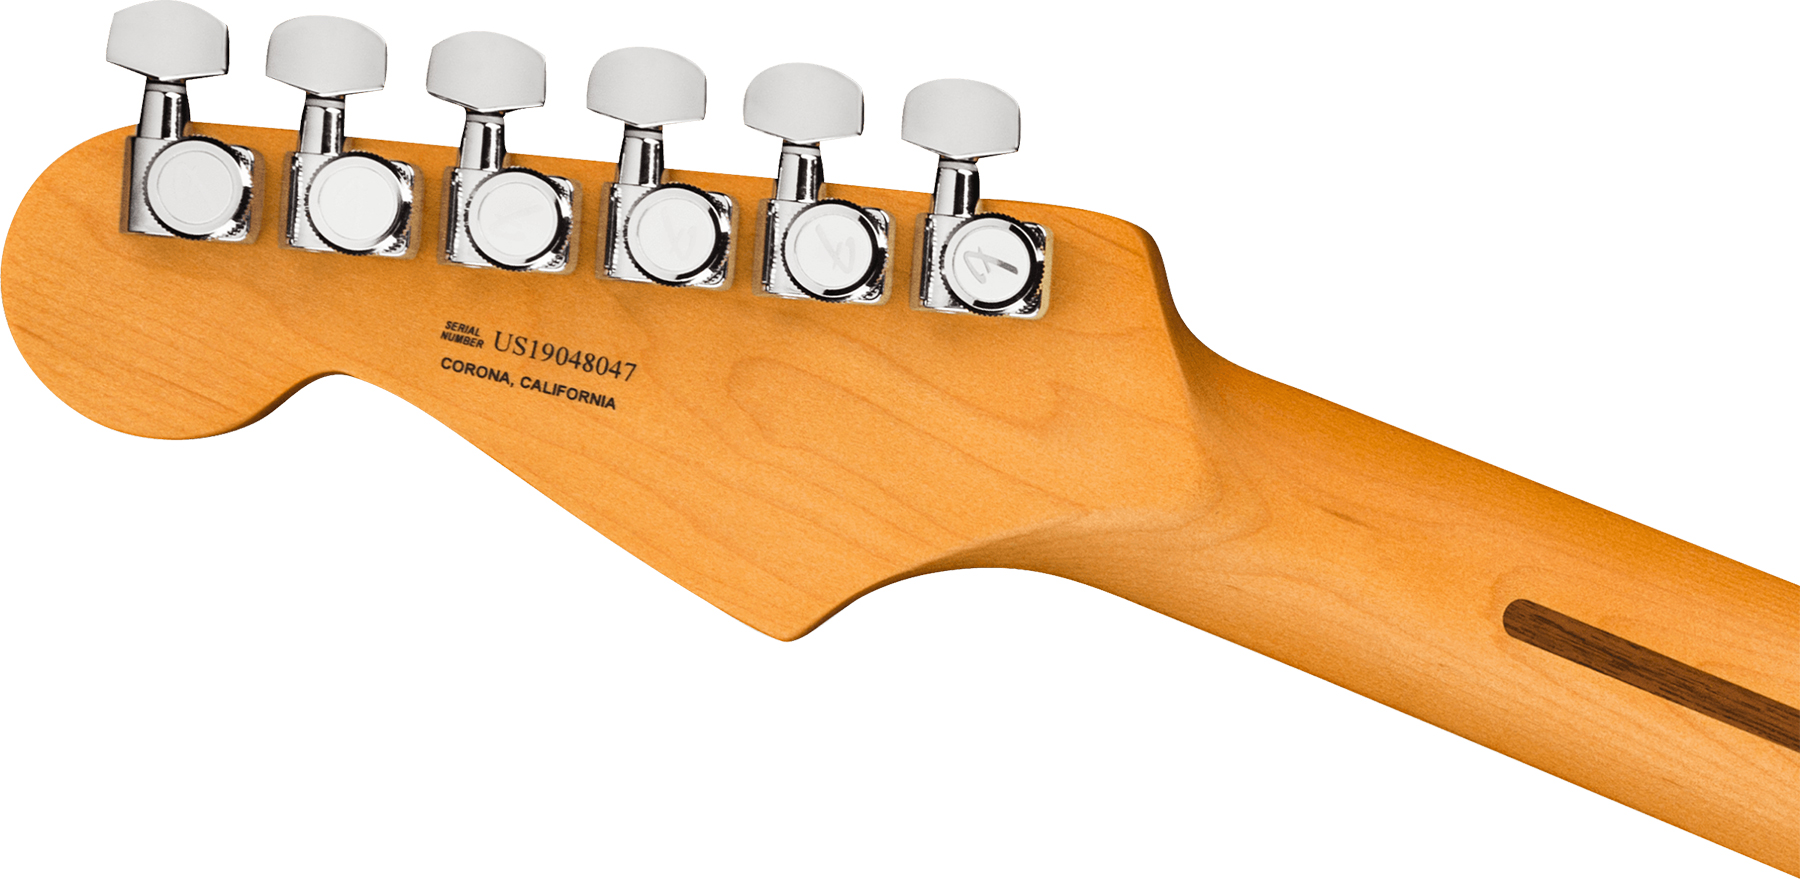 Fender Strat American Ultra 2019 Usa Rw - Ultraburst - E-Gitarre in Str-Form - Variation 3